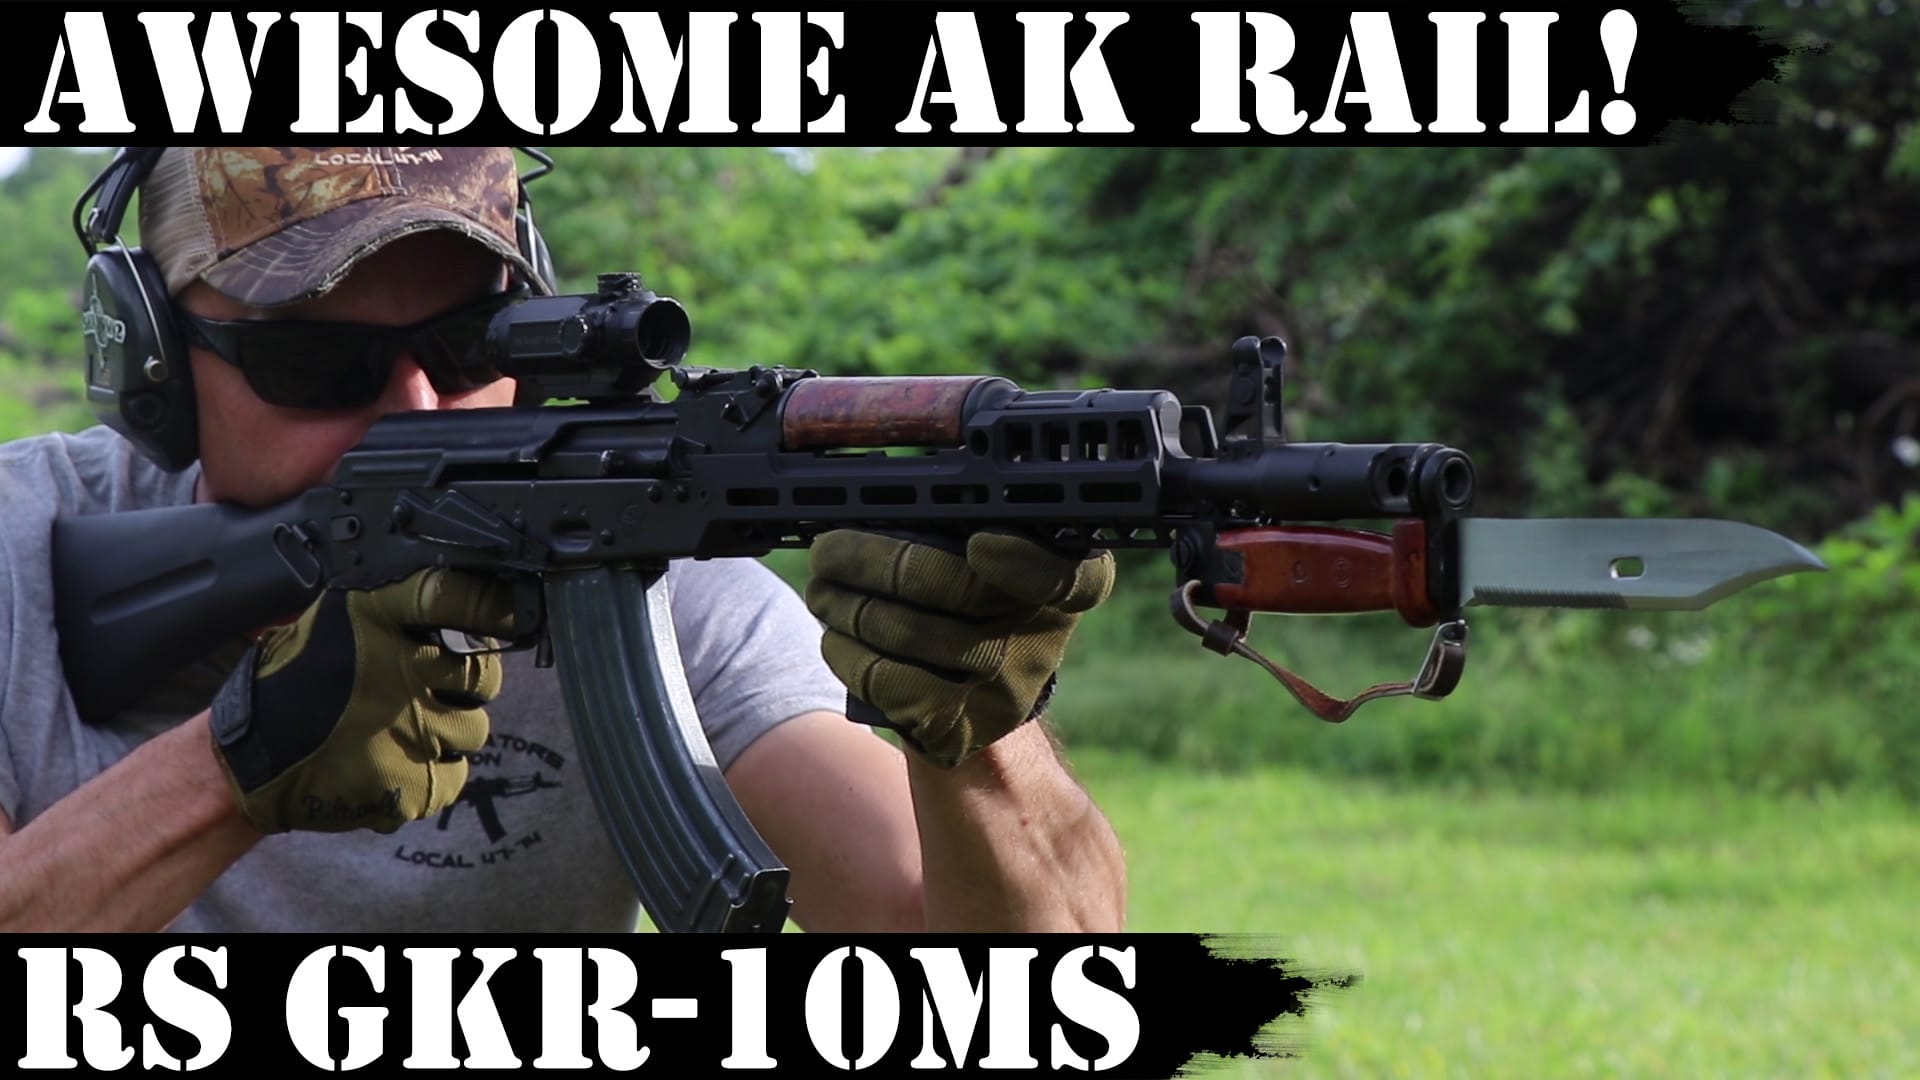 Awesome AK rail!